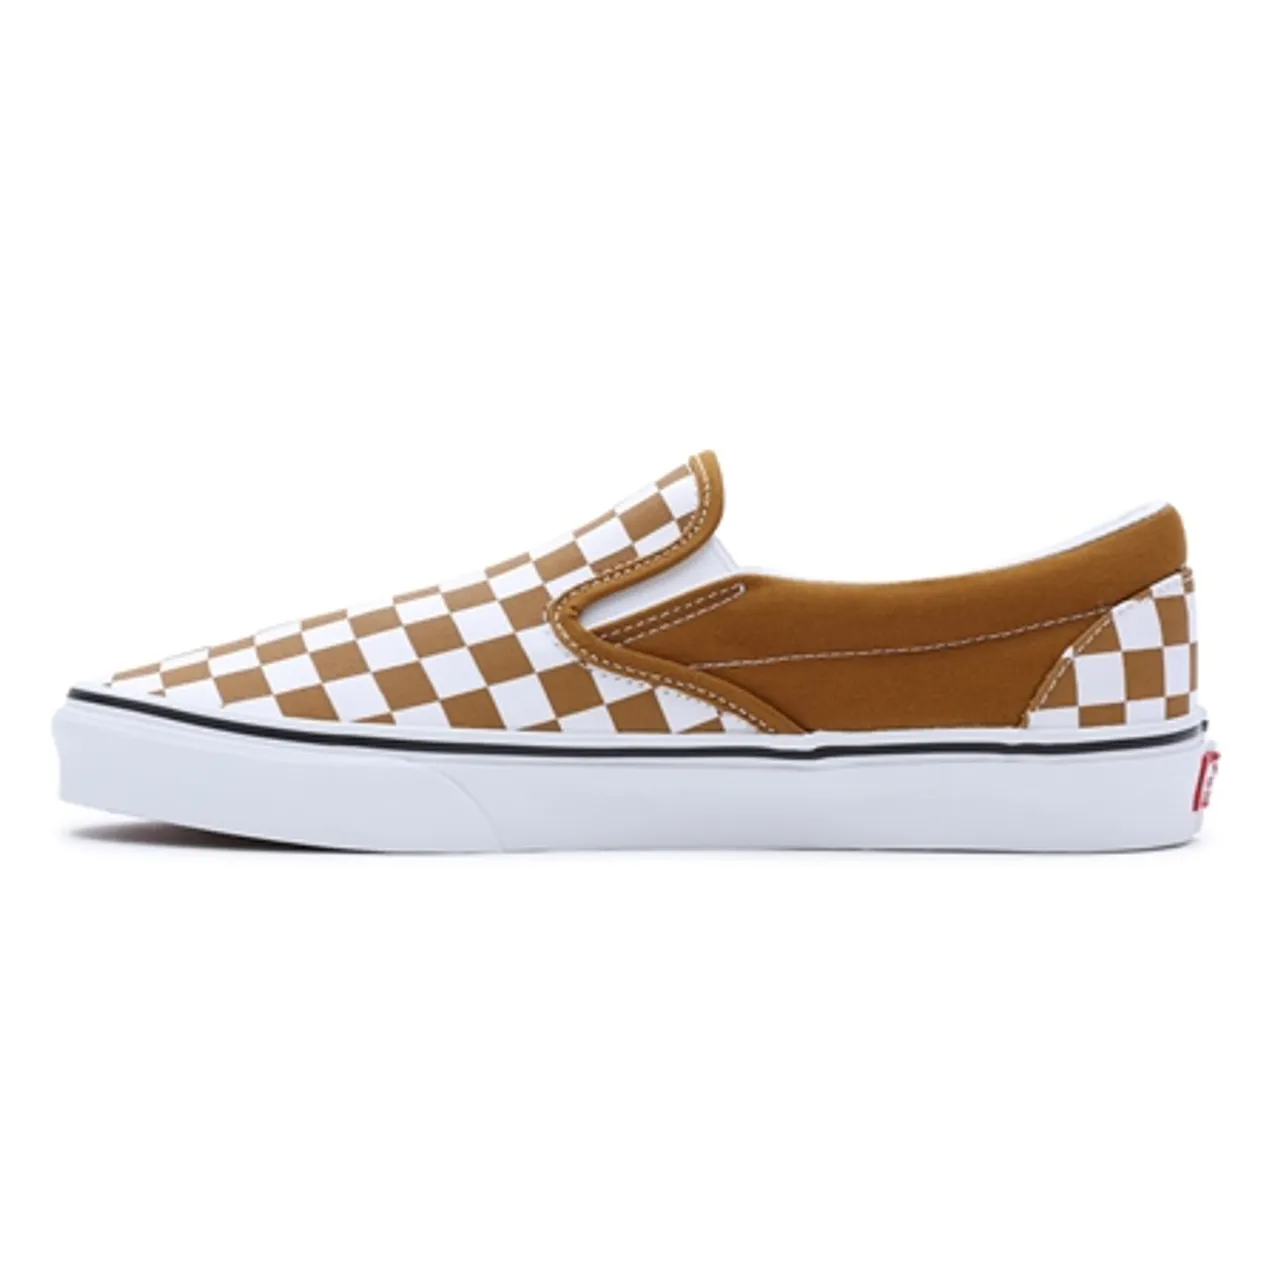 Vans Classic Slip On Shoes - Checkerboard Golden Brown - UK 8 (EU 42)